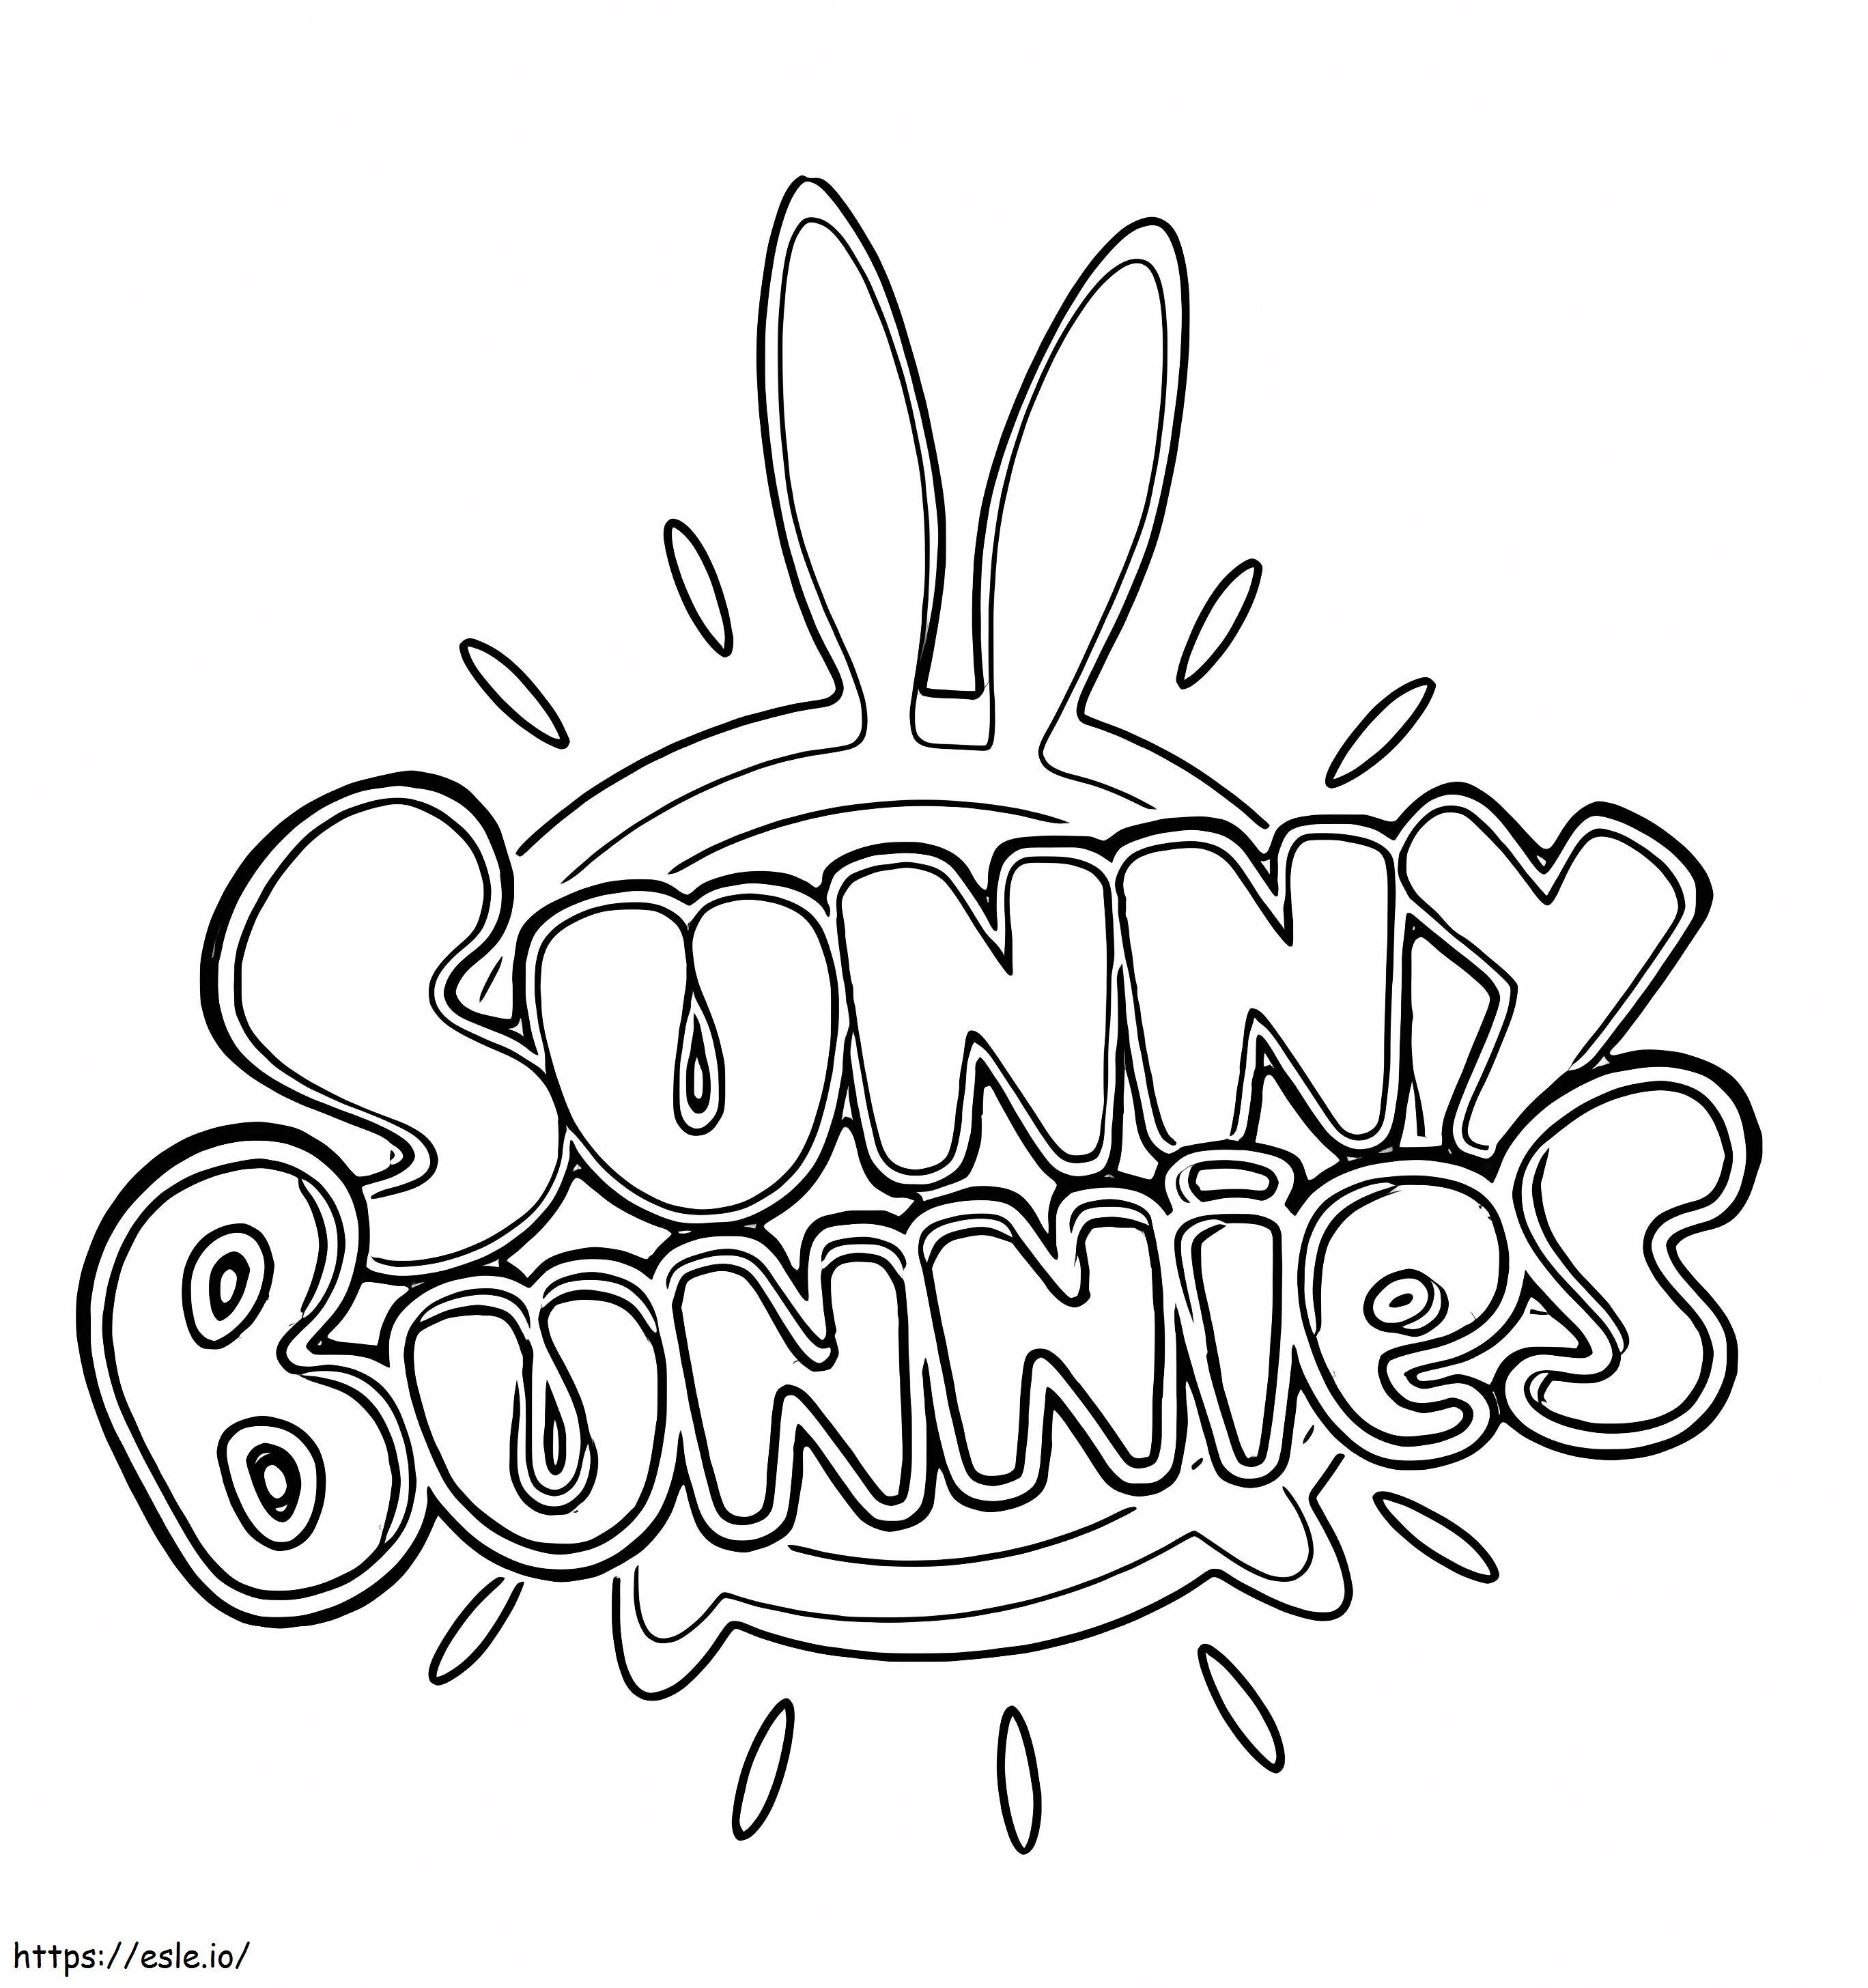 Logo coniglietti soleggiati da colorare